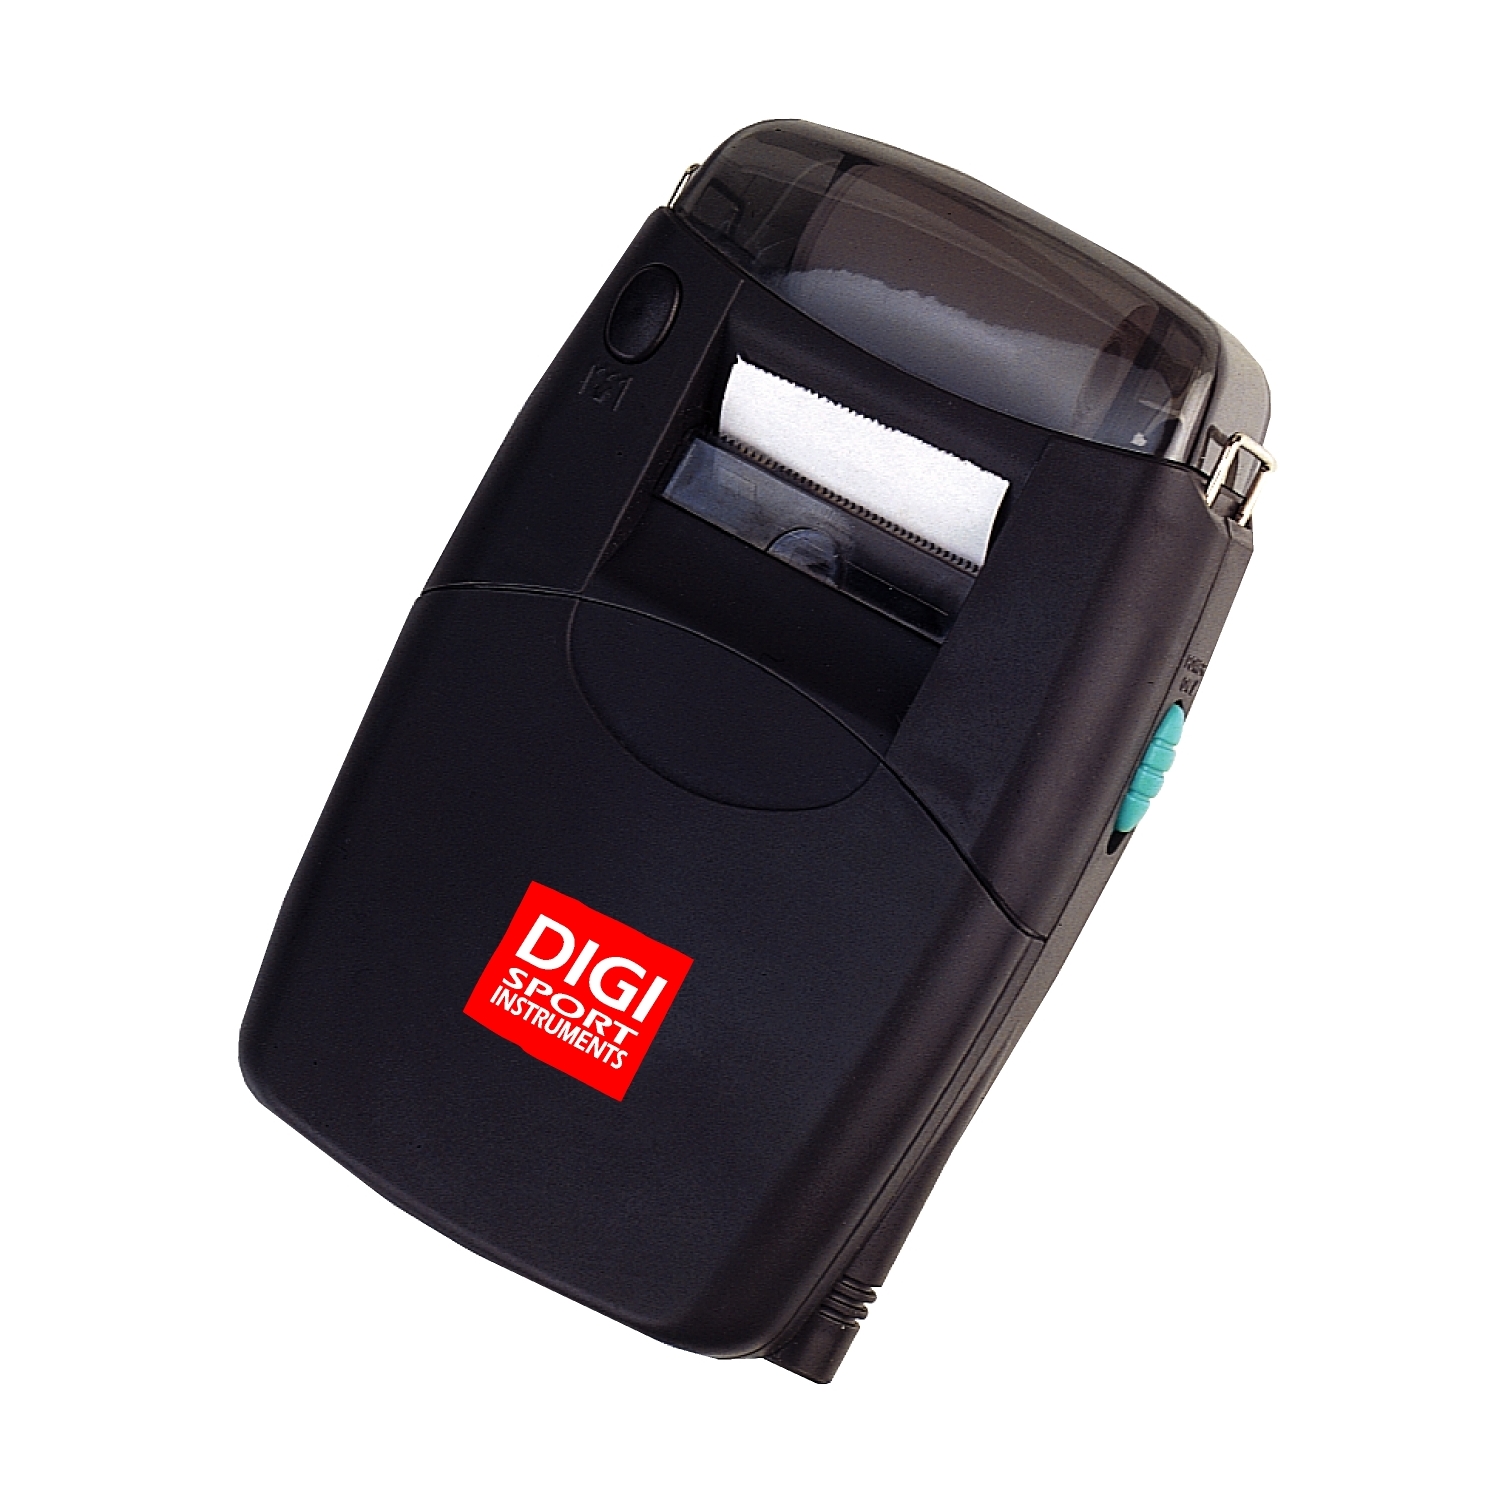 Digi Dt2000-500 Time Printer